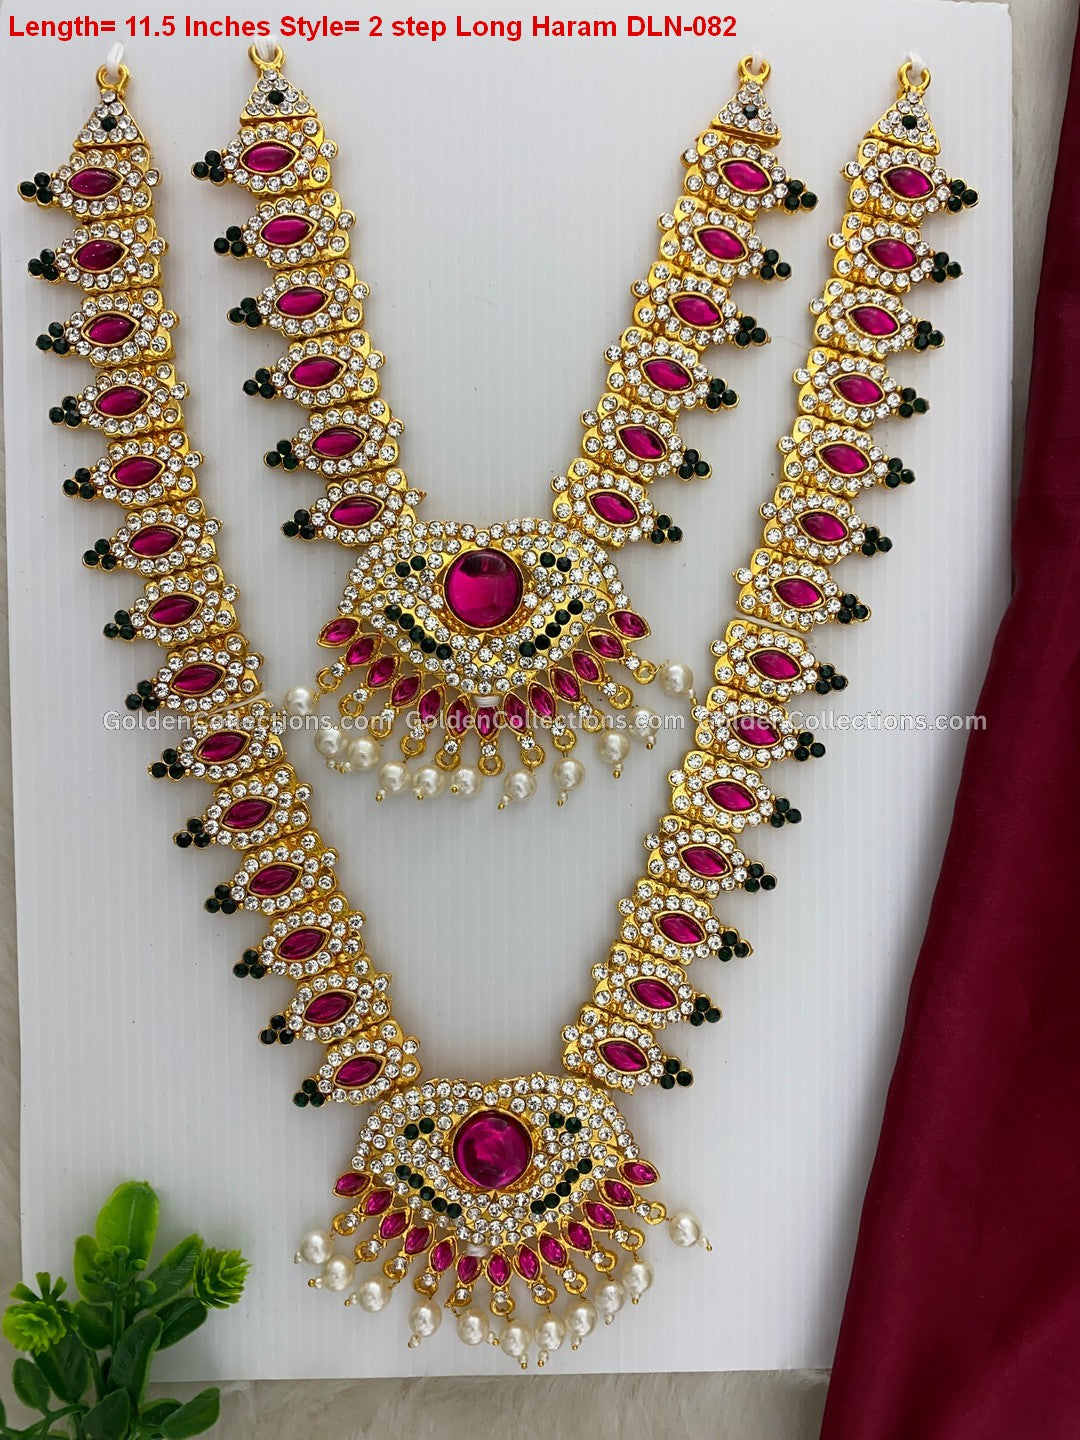 Deity Long Necklace for Varalakshmi - Buy Online DLN-082